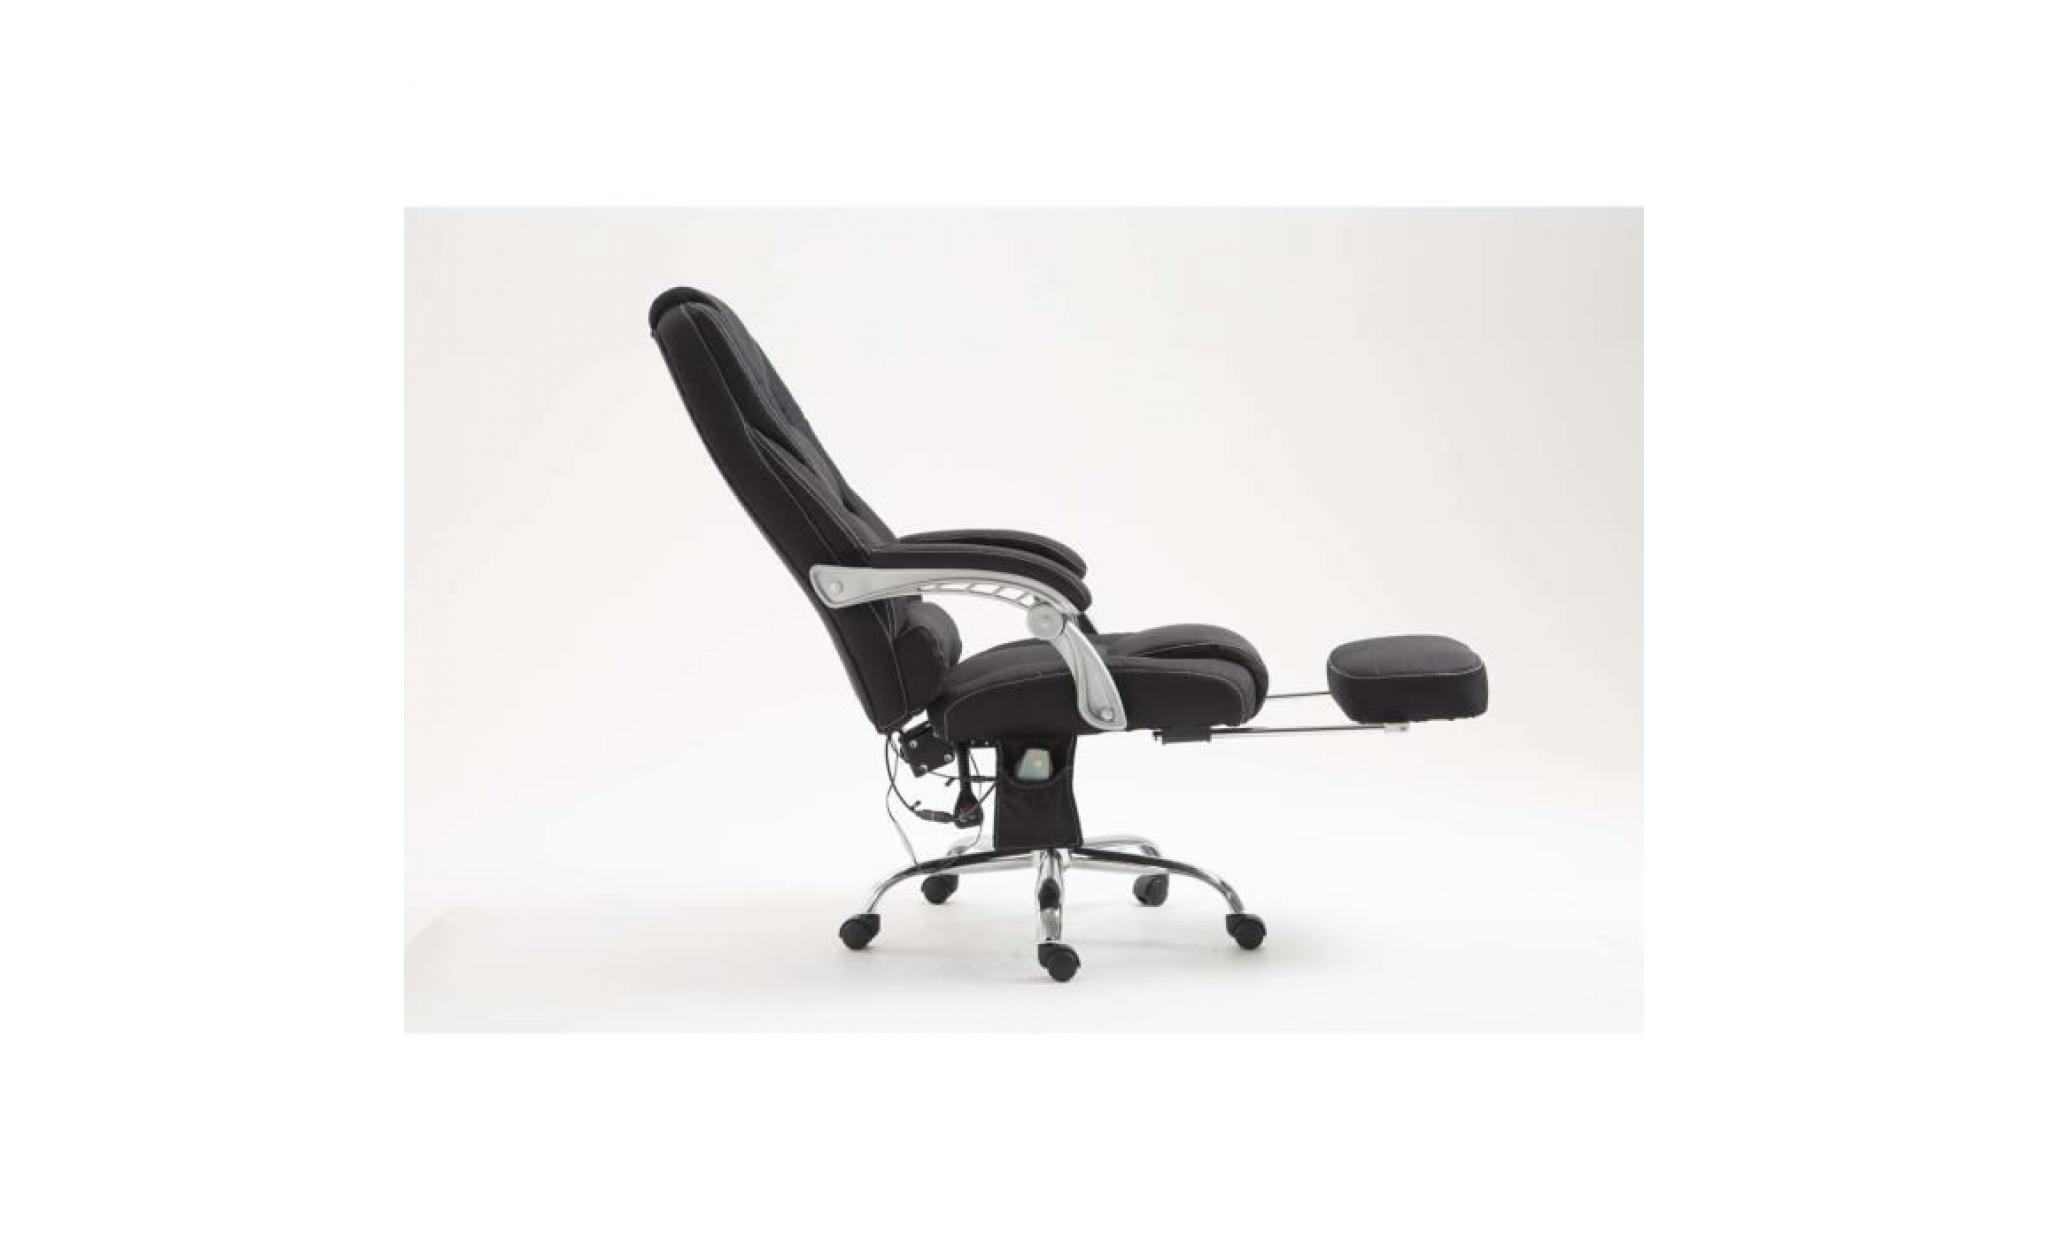 clp fauteuil de bureau pacific avec fonction massage, poids admis 150 kg, siège de relaxation avec un appui pieds ajustable, avec pas cher